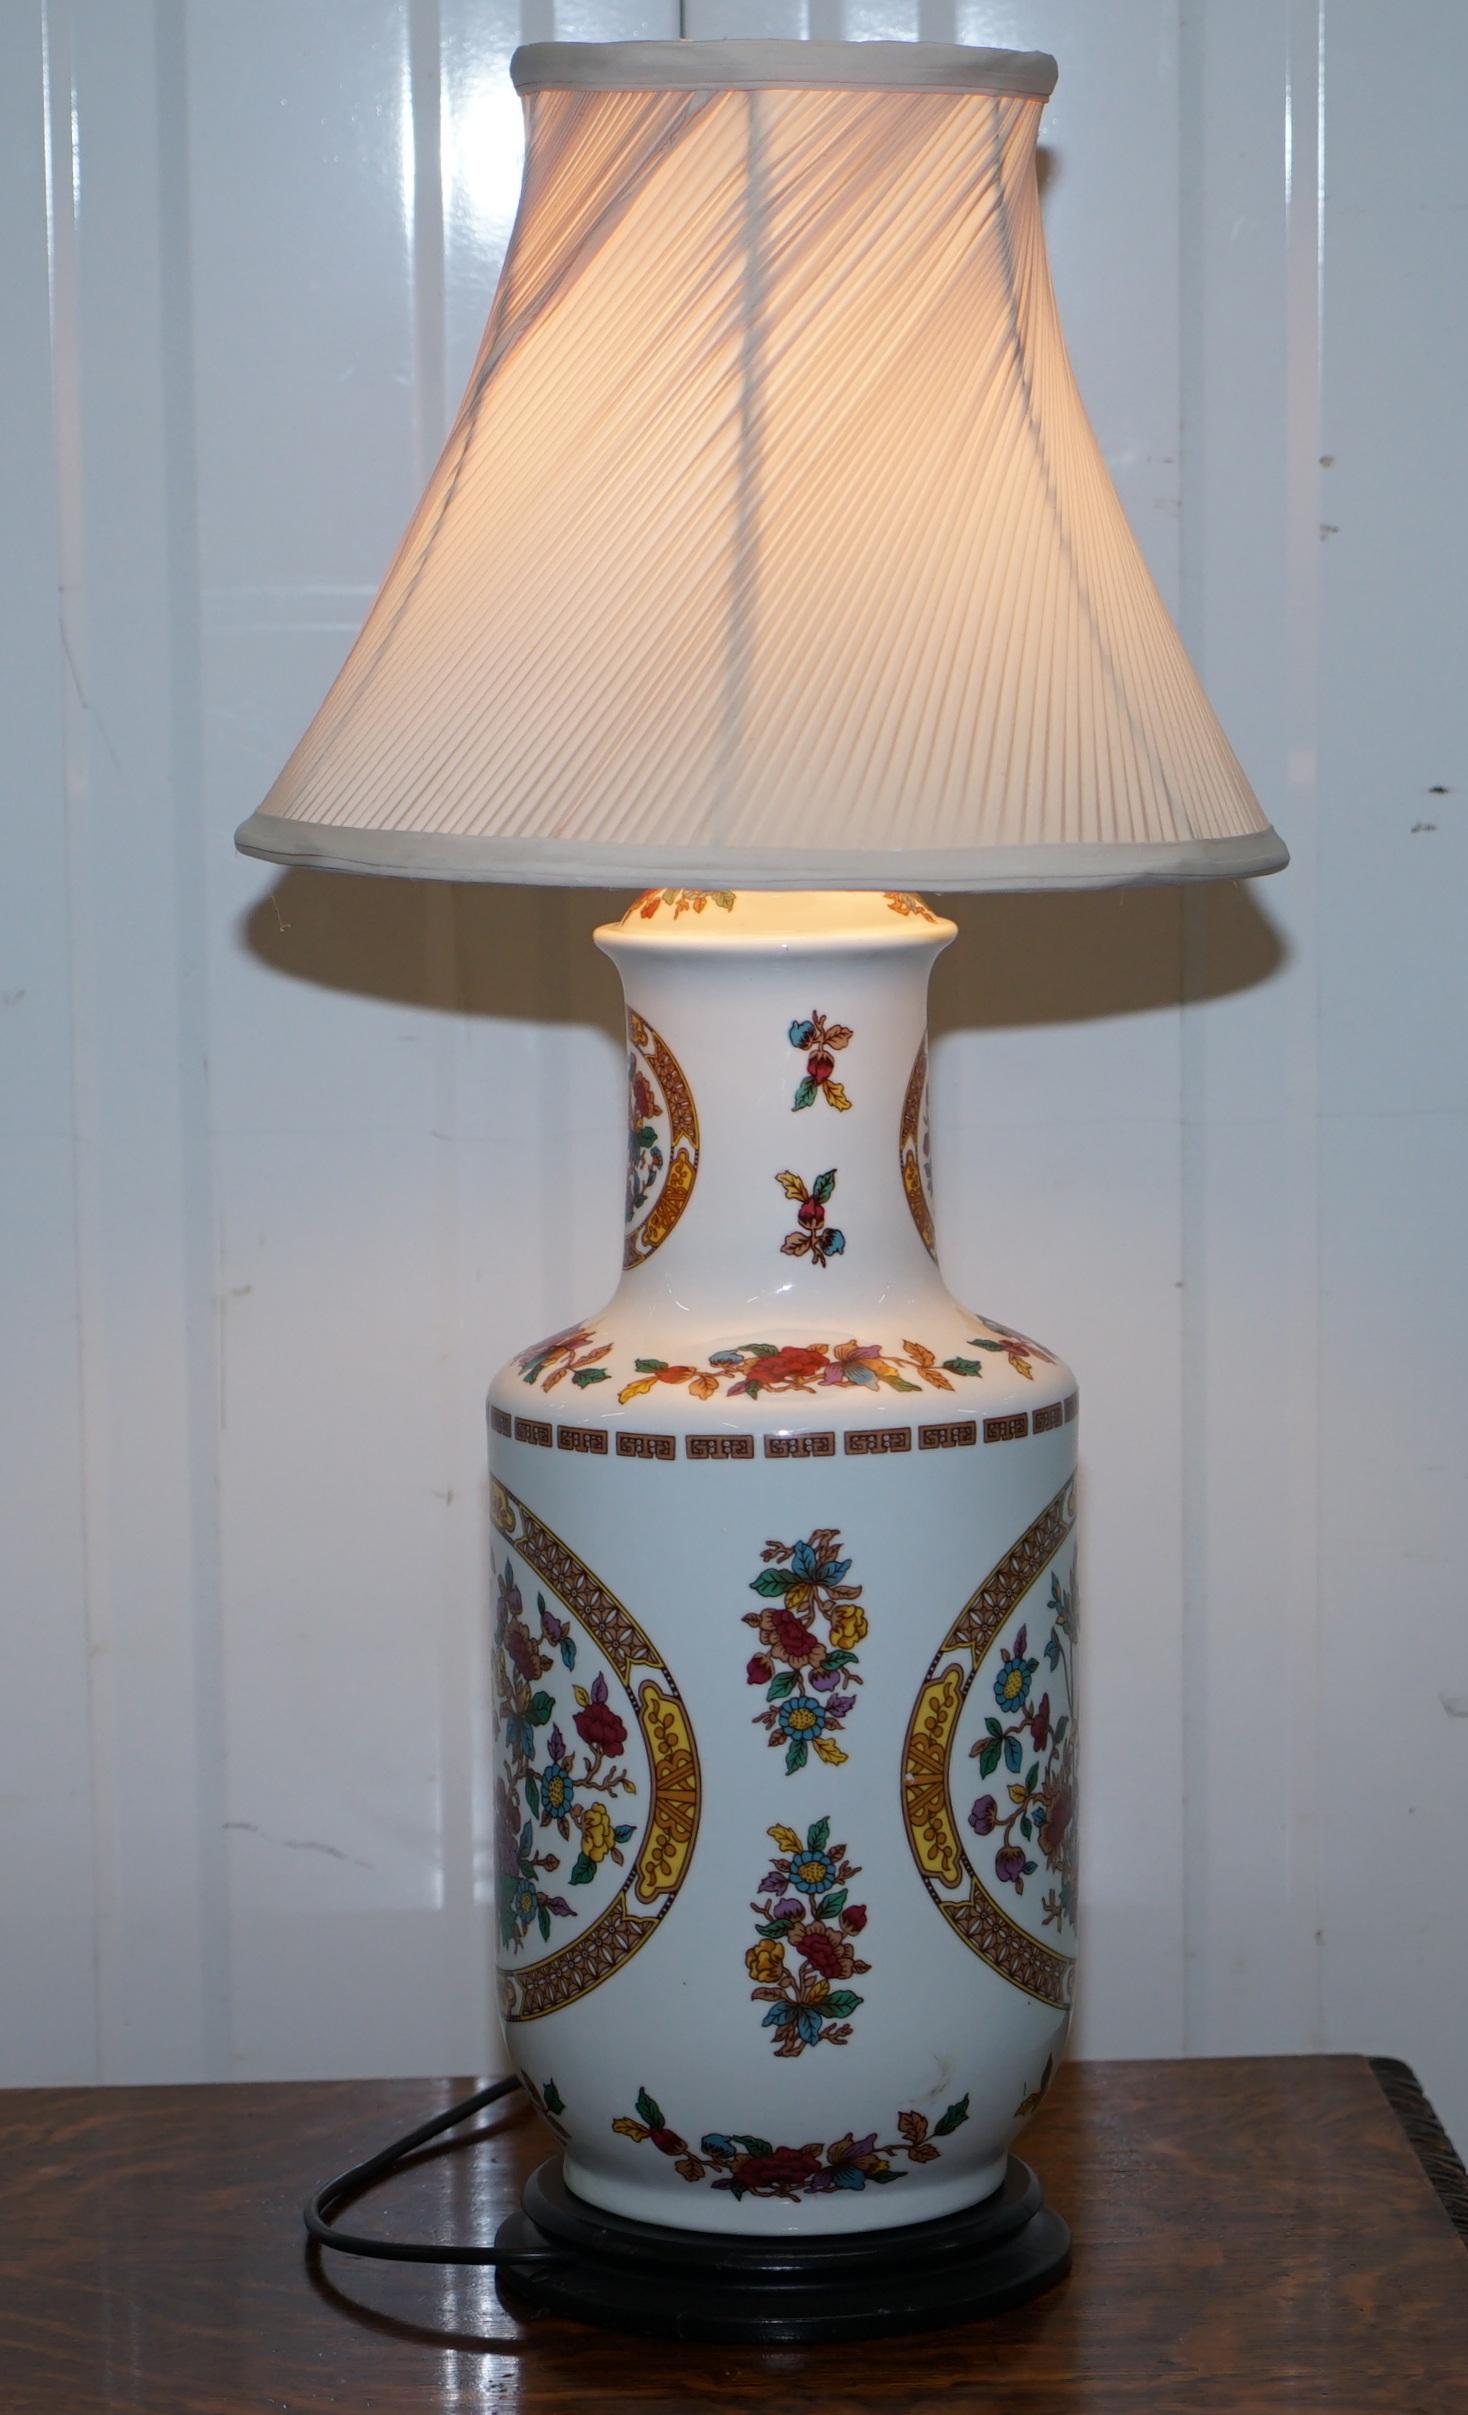 Wir freuen uns, diese schöne chinesische Vintage-Vase, die in eine Lampe umgewandelt wurde, zum Verkauf anzubieten

Eine sehr gut aussehende und gut gemachte Lampe, außergewöhnlich dekorativ und ich glaube, die einzige ihrer Art

Es wurde